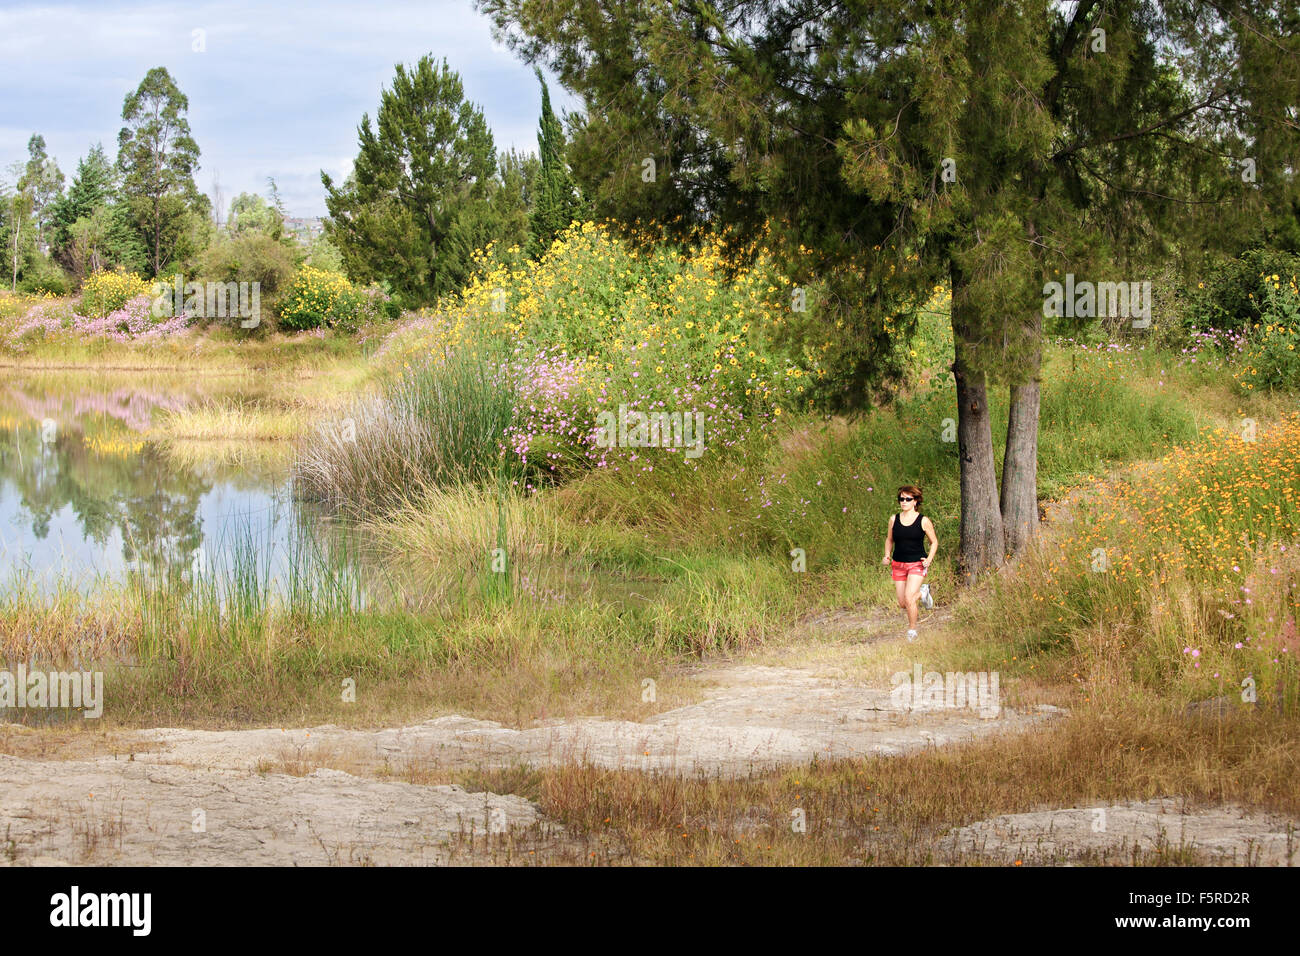 Female trail runner in the Parque Ecologico of Morelia, Michoacan, Mexico. Stock Photo